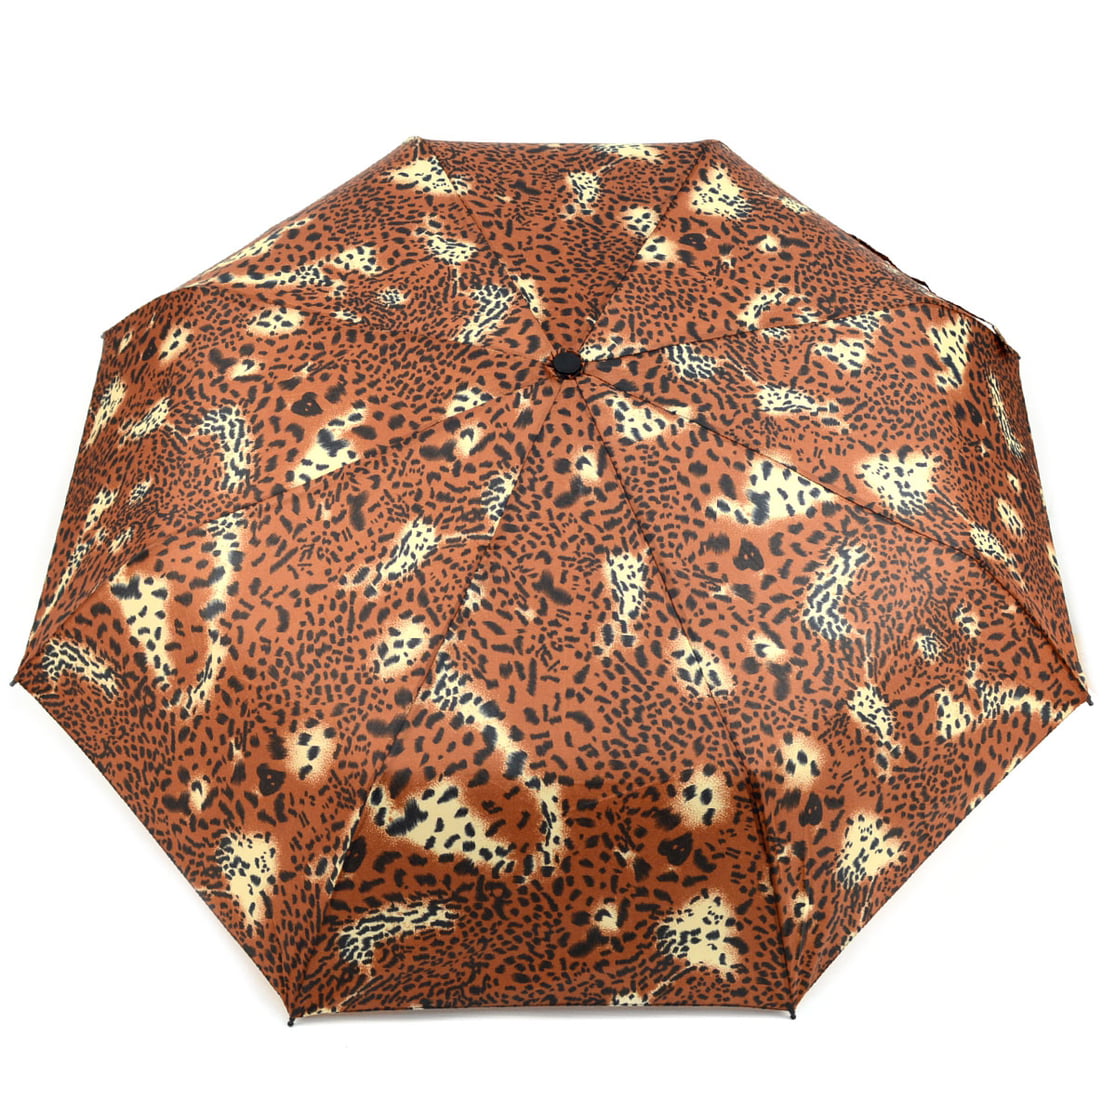 Leopard Print Telescopic Compact Travel Umbrella - Walmart.com